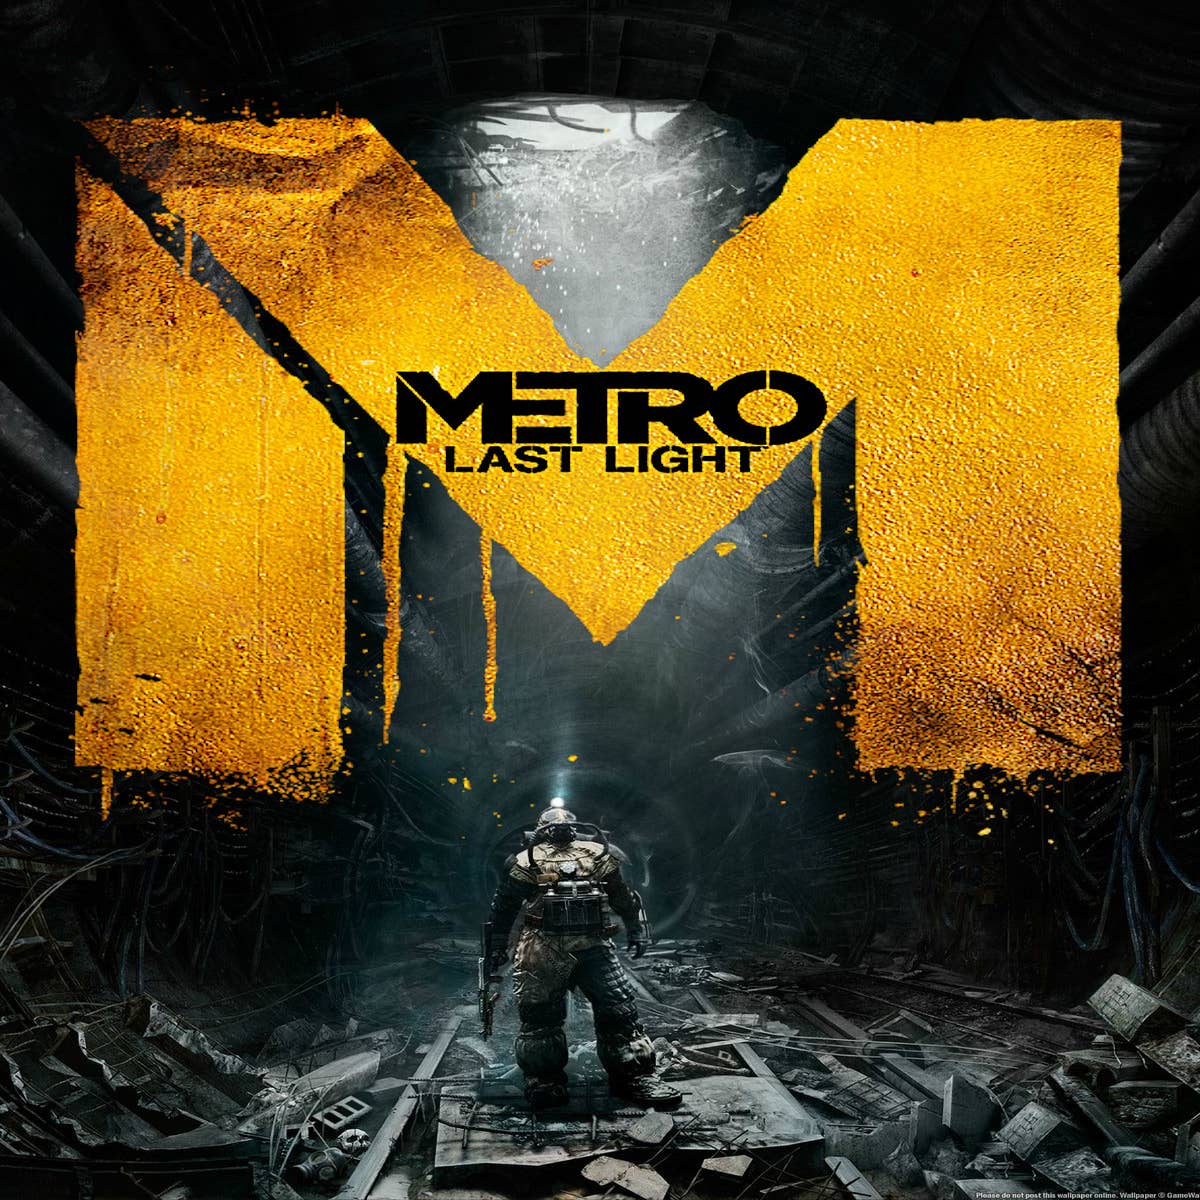 metro last light edicao limitada com dlc - jogo xbox 360 - Retro Games